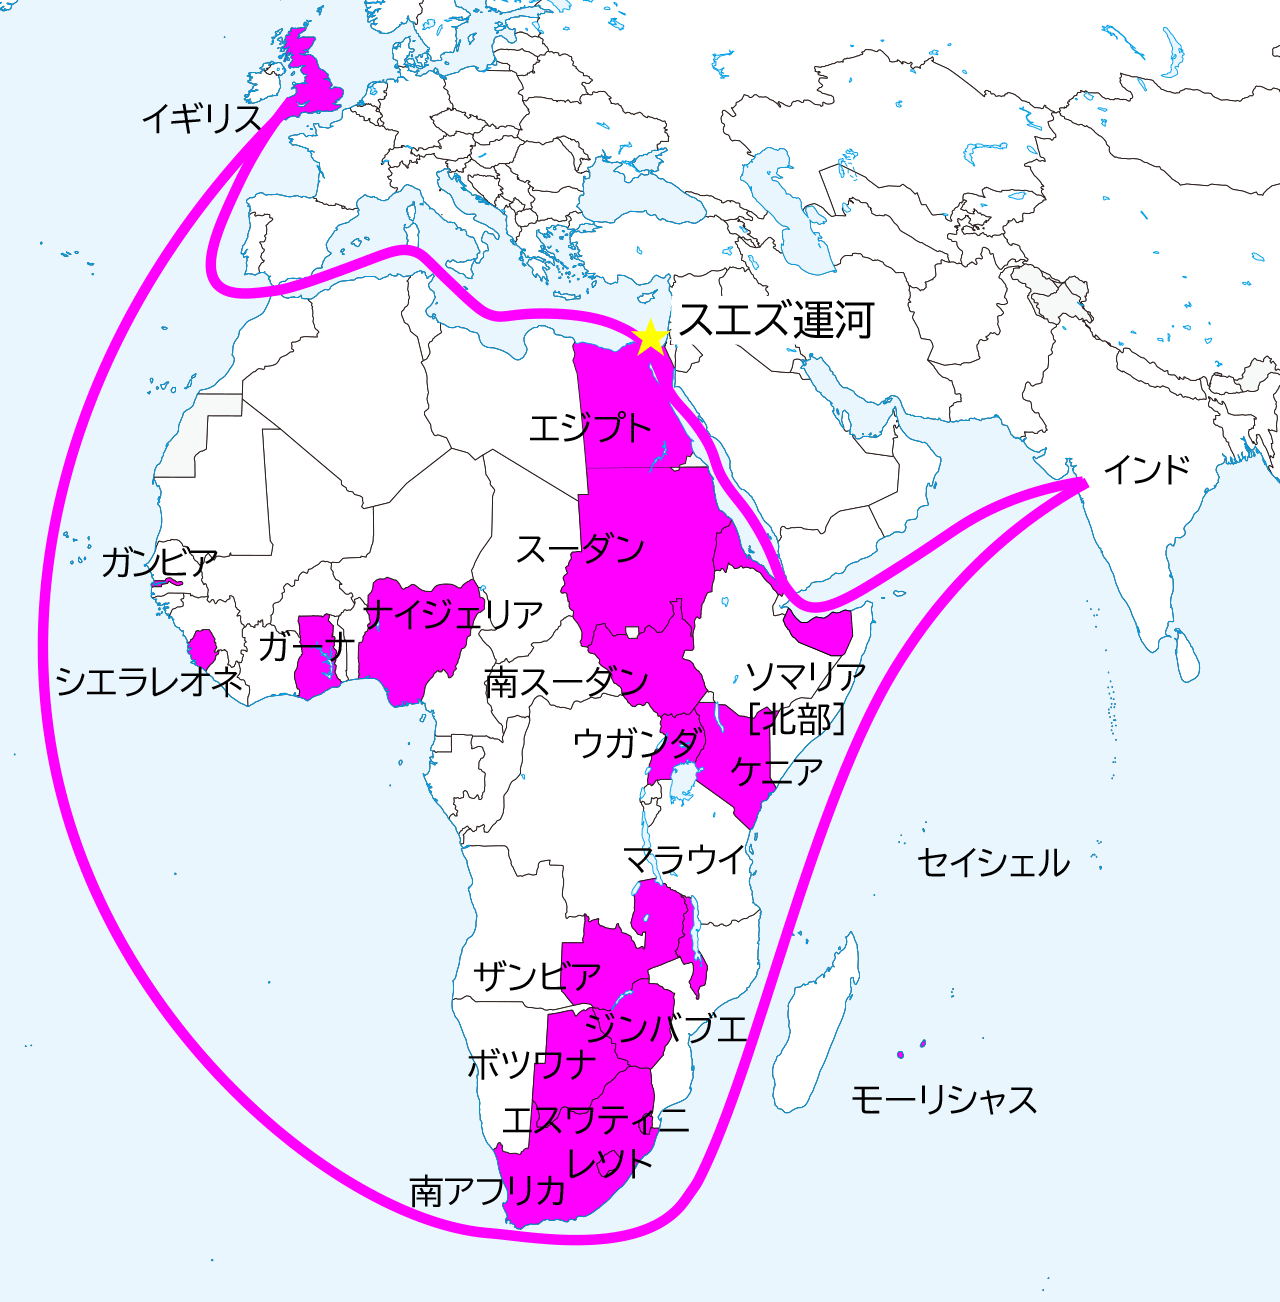 アフリカ分割 地図でイギリスの戦略が一目でわかる 国連データが充実のsdgsサイト